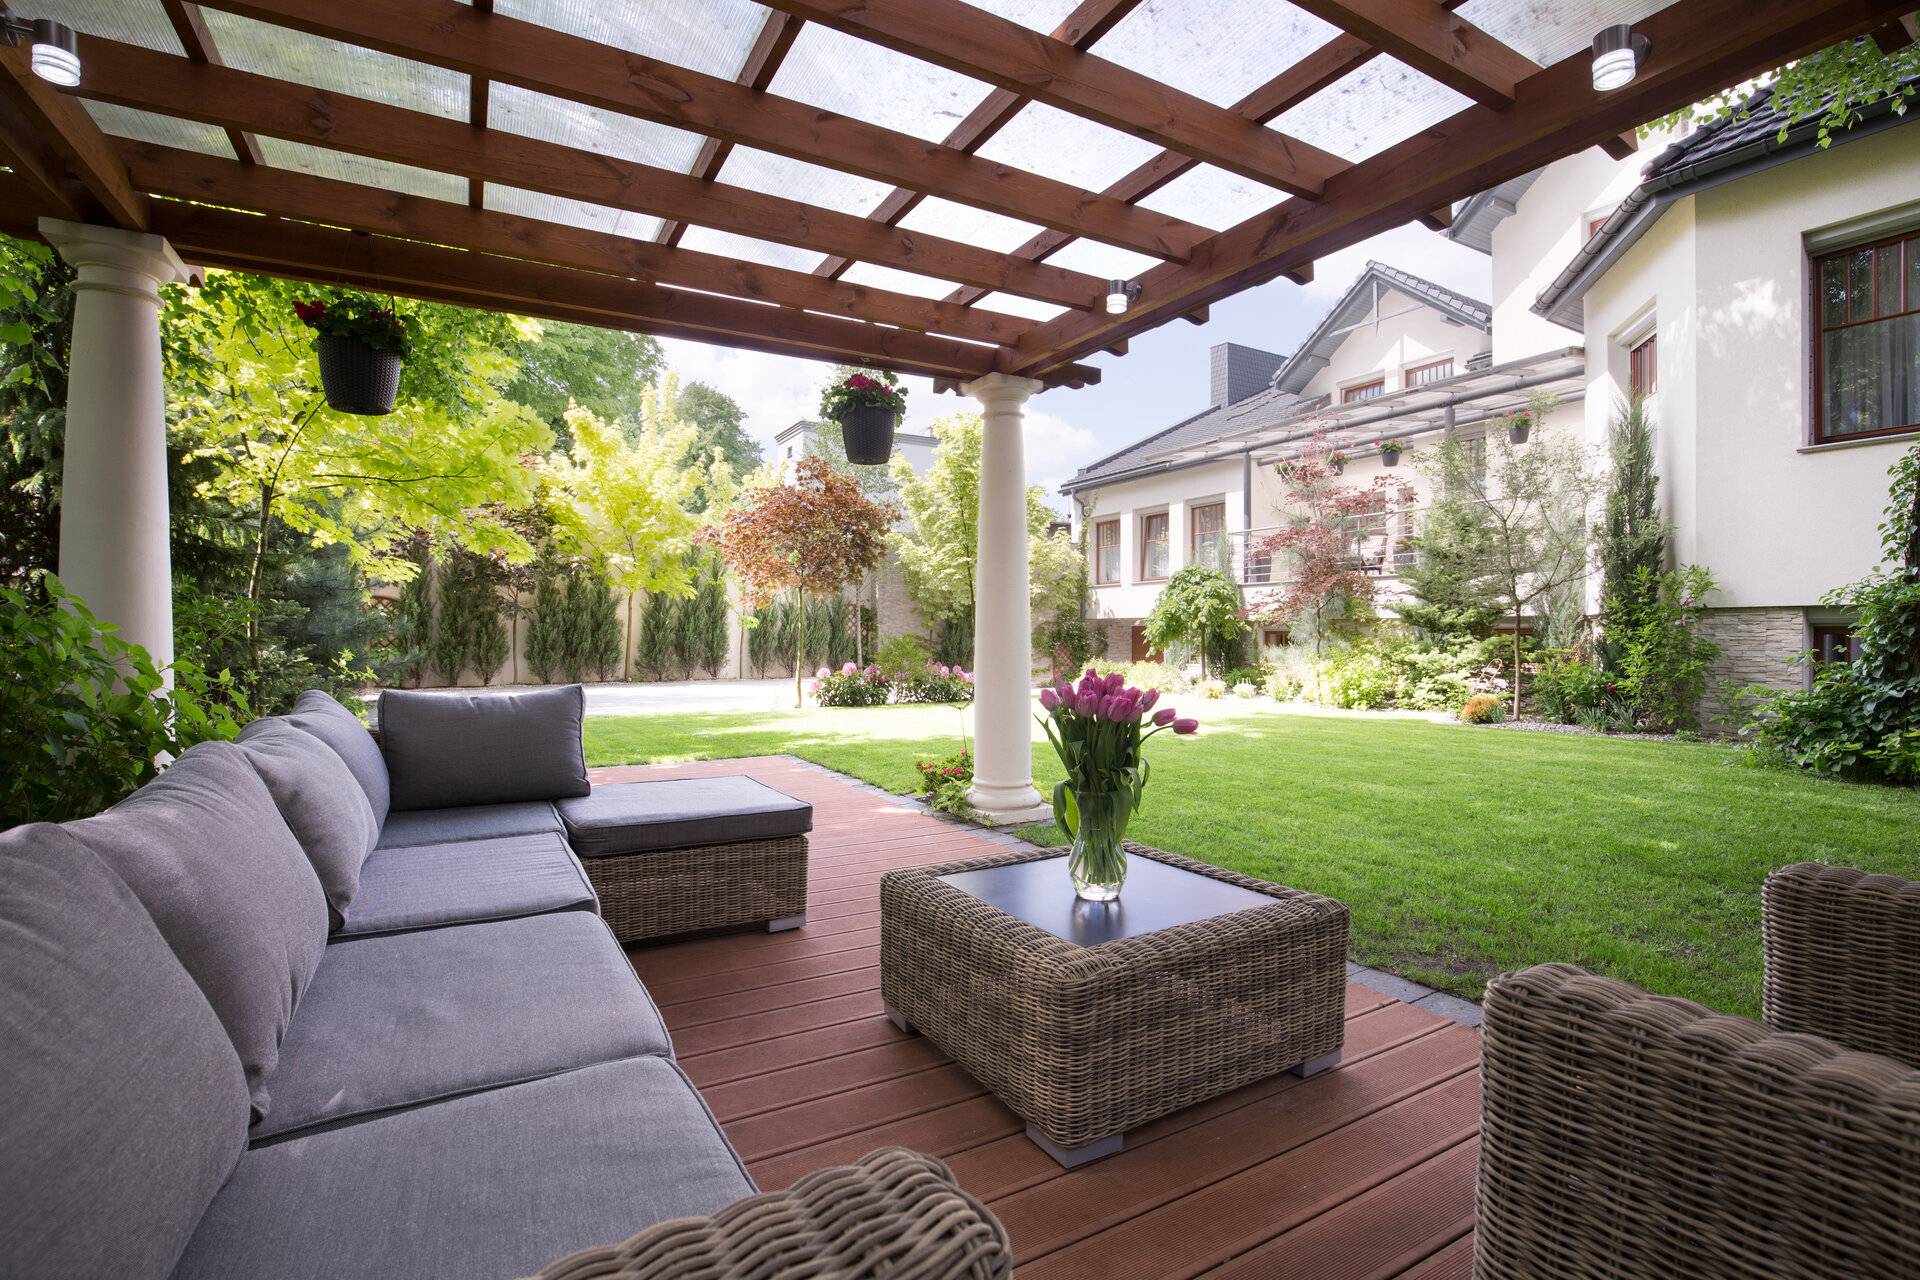 Foto von gemütlicher Sitzecke im Garten, mit Gartenmöbeln auf einer Terrasse